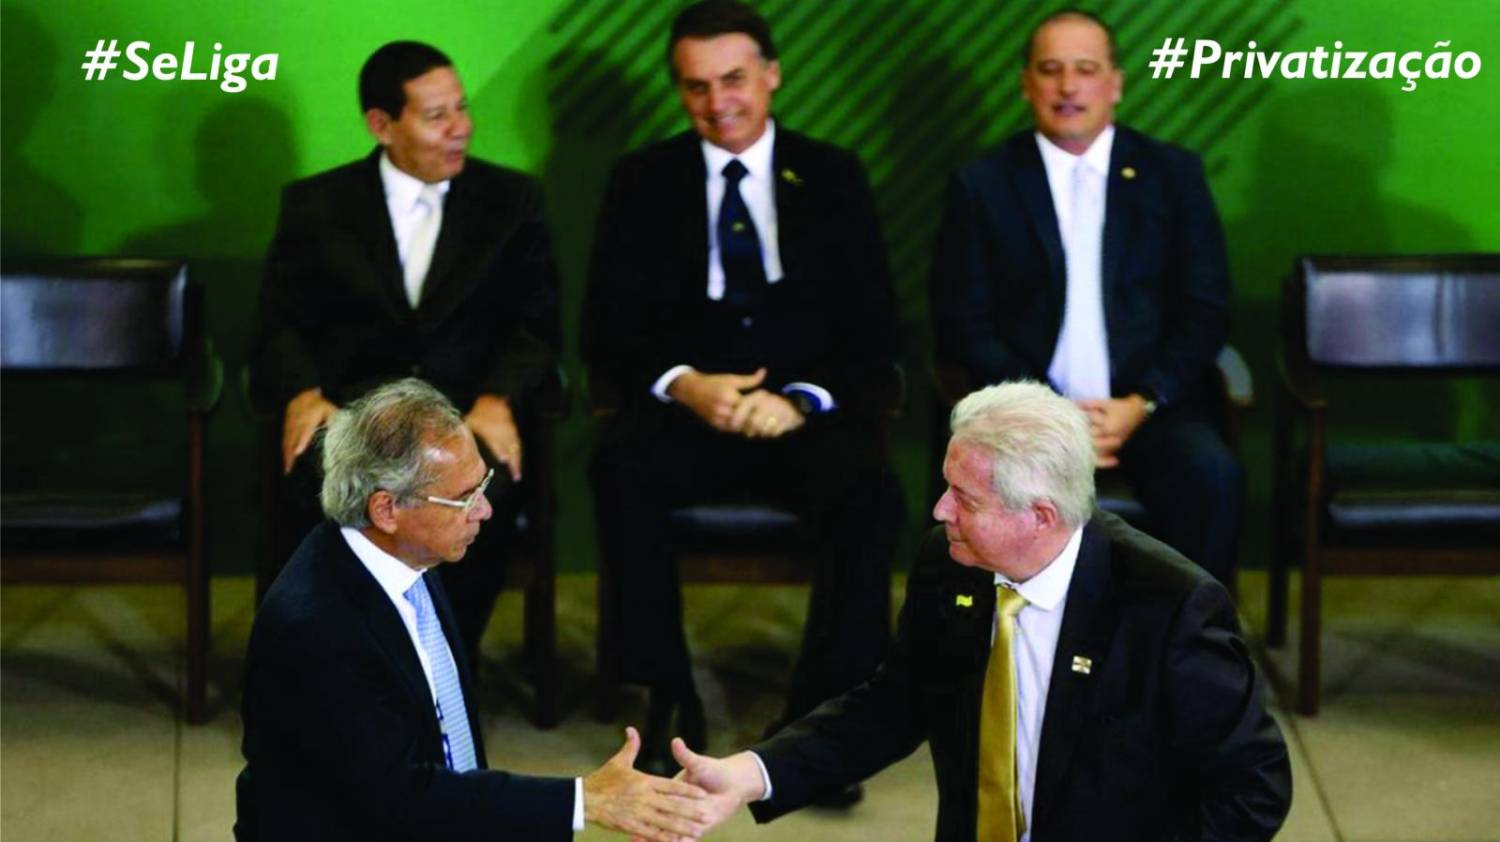 Para o presidente do Banco do Brasil, privatização é fácil